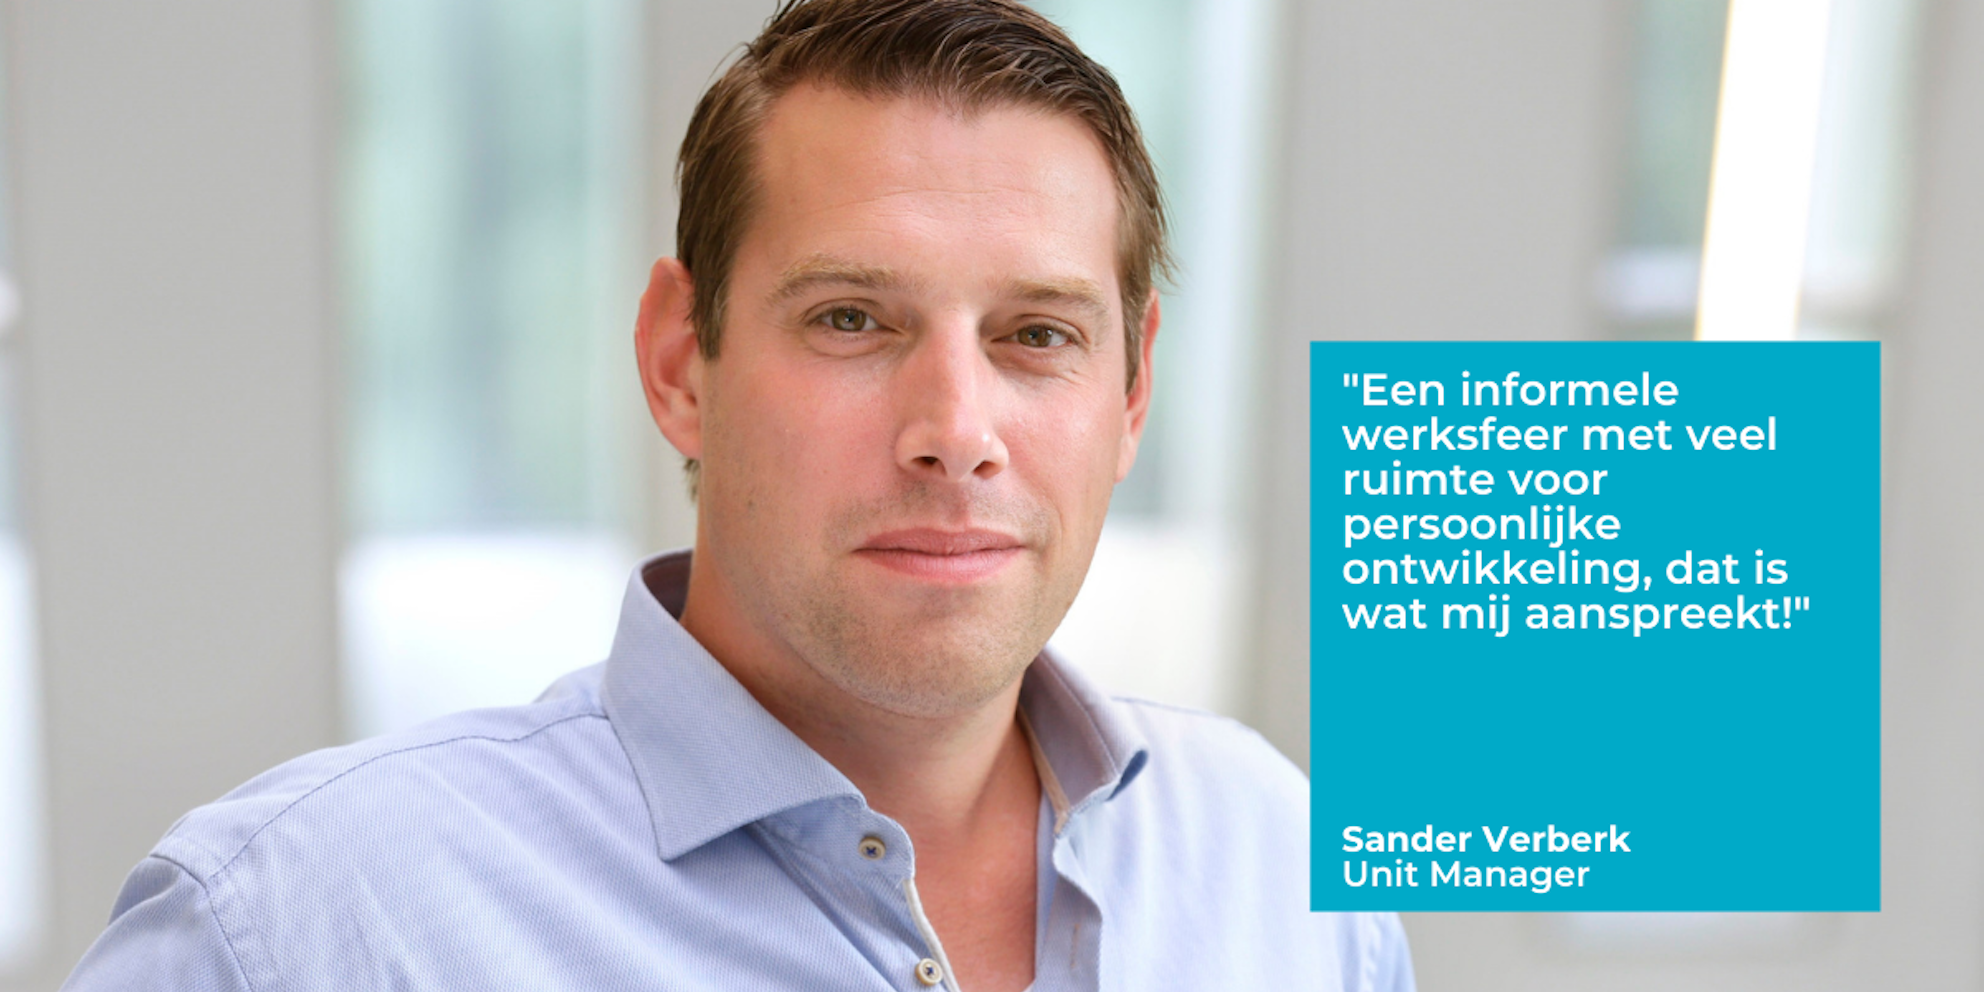 Sander Verberk quote